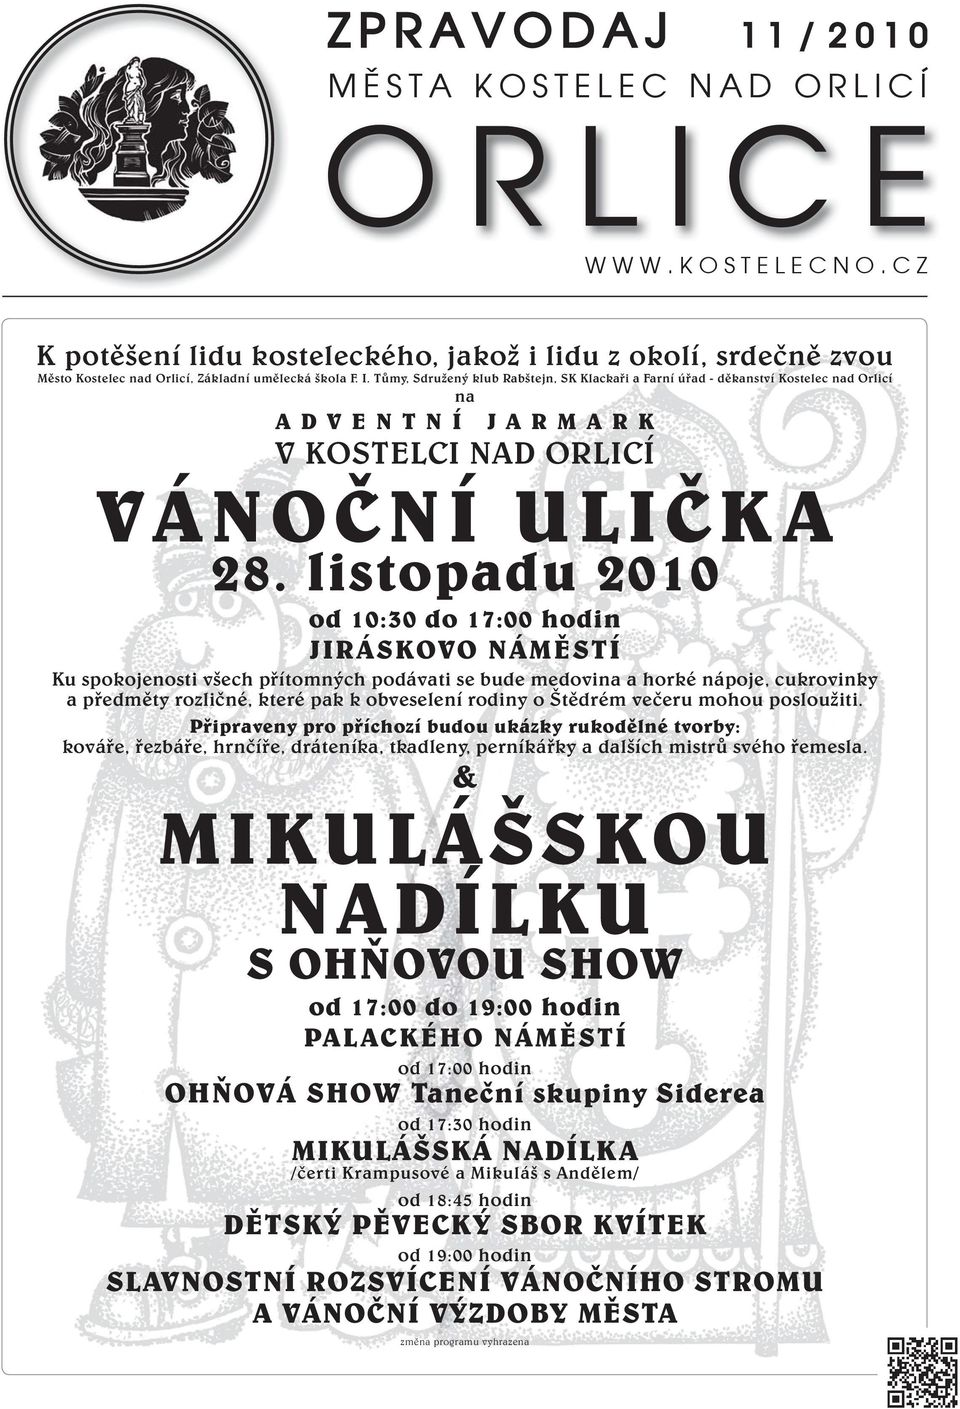 listopadu 2010 od 10:30 do 17:00 hodin JIRÁSKOVO NÁMĚSTÍ Ku spokojenosti všech přítomných podávati se bude medovina a horké nápoje, cukrovinky a předměty rozličné, které pak k obveselení rodiny o